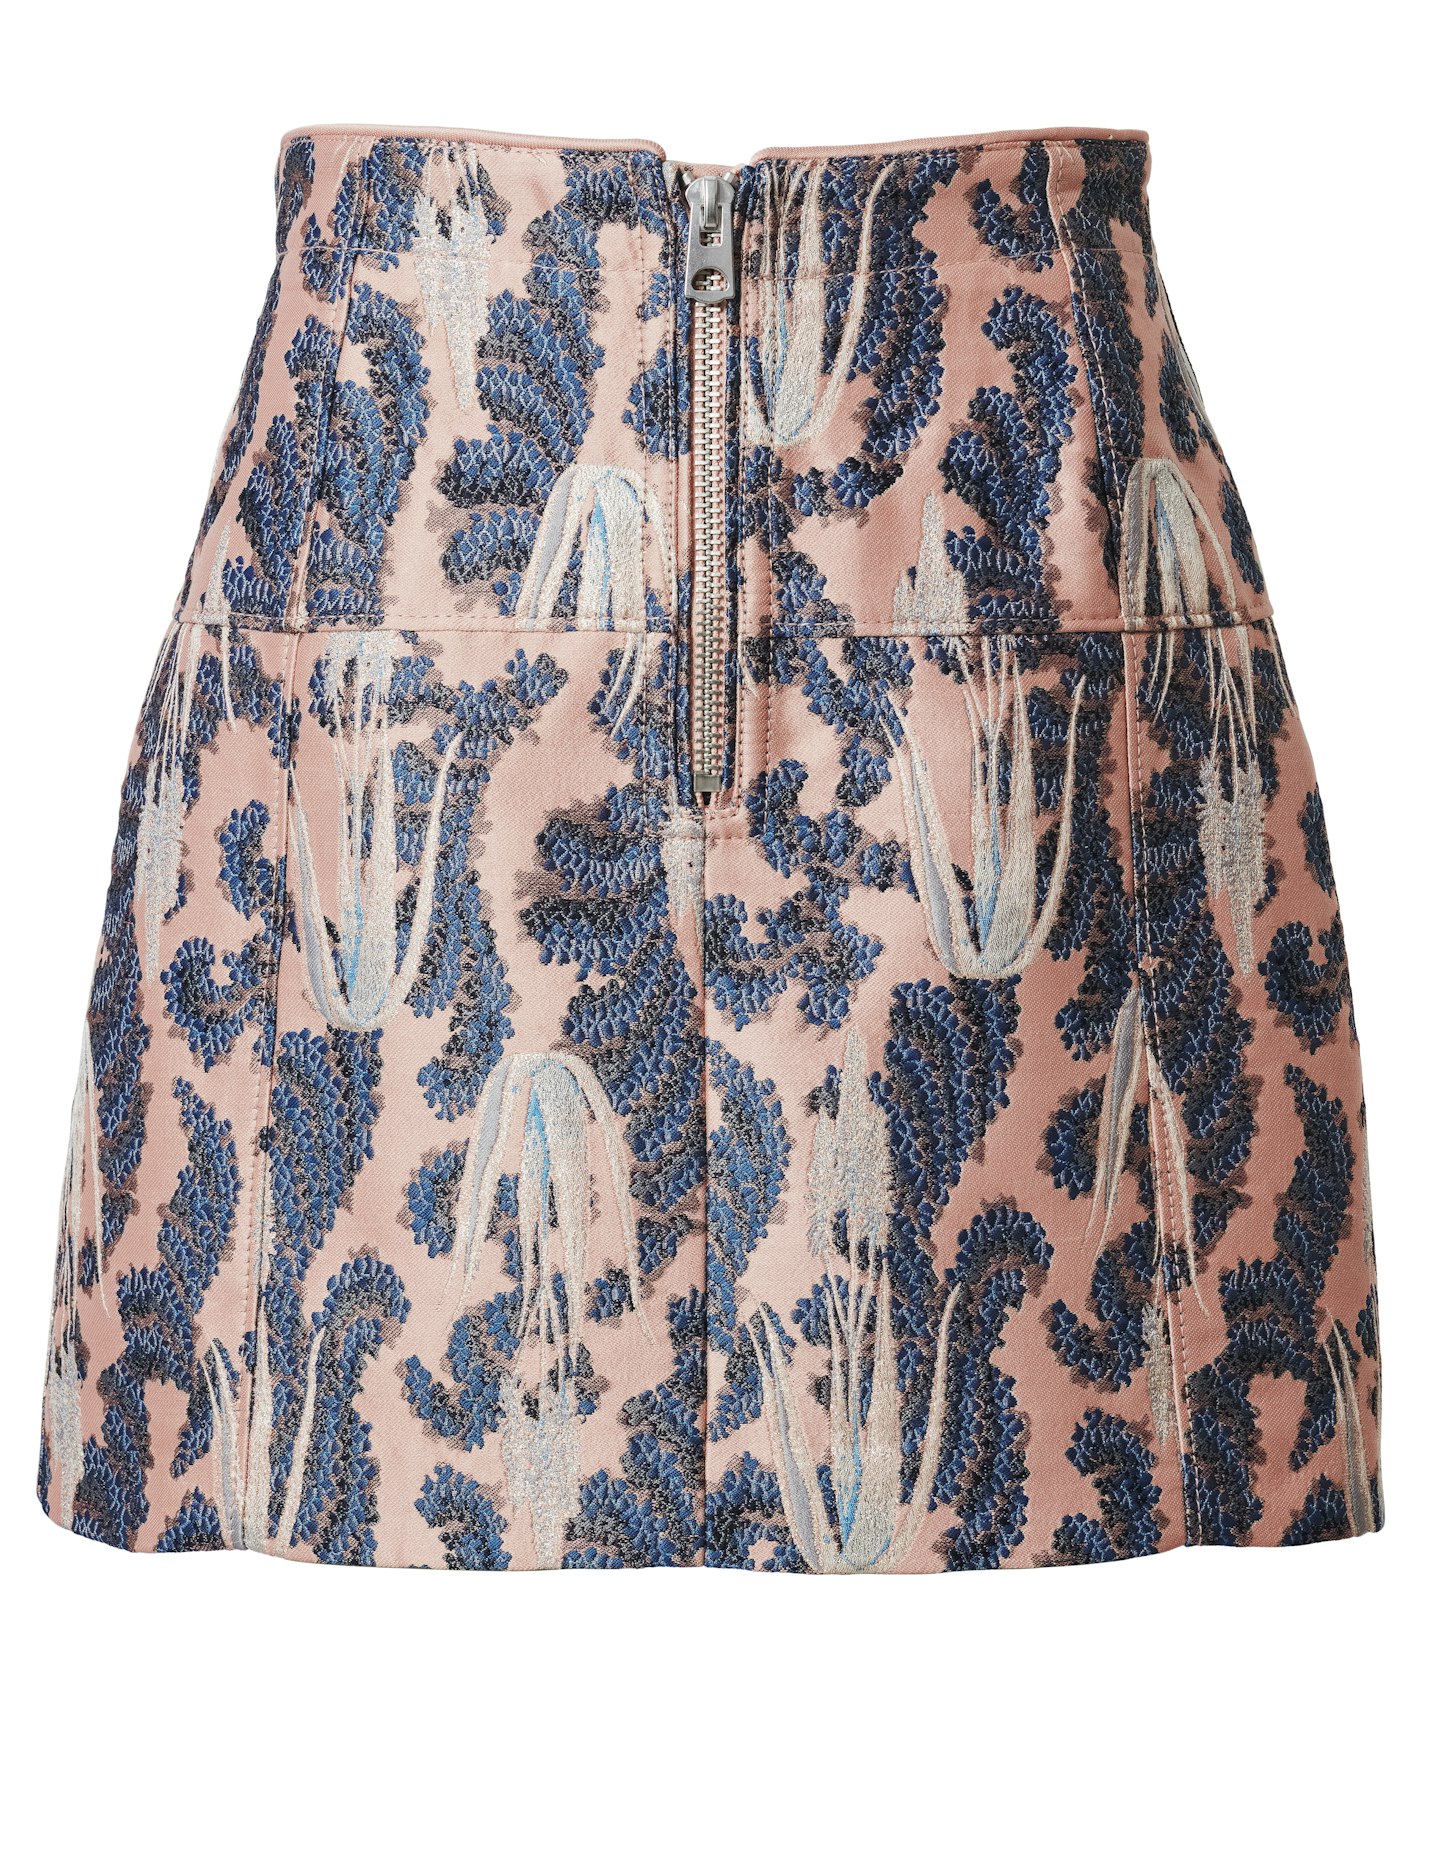 Brocade Skirt, £49.99